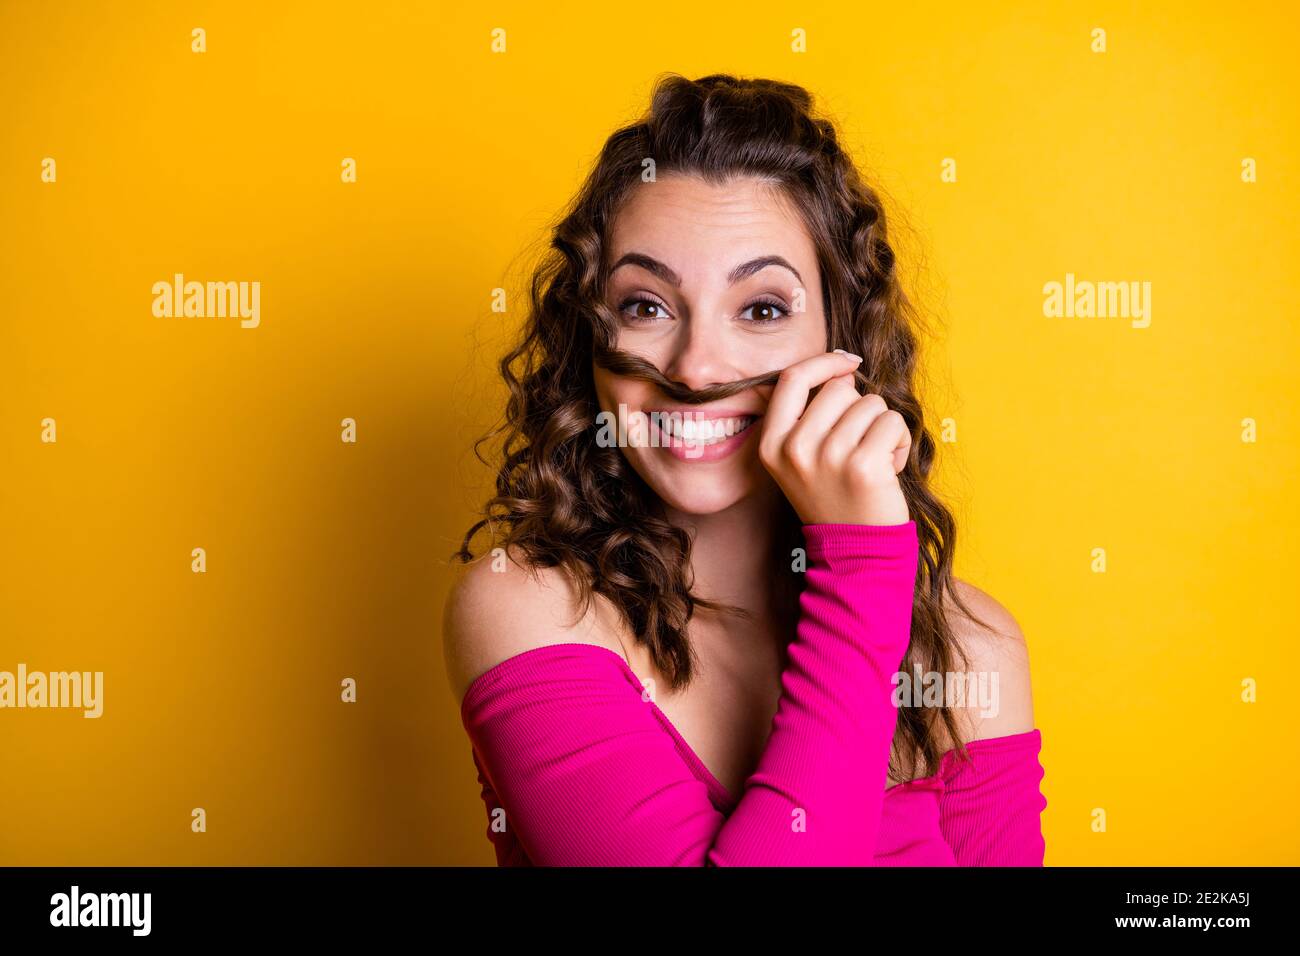 Foto-Porträt von goofy Mädchen machen Haar Schnurrbart lächelnd halten Mit handgetragenem rosa Crop-Top isoliert auf lebhaft gelb gefärbt Hintergrund Stockfoto